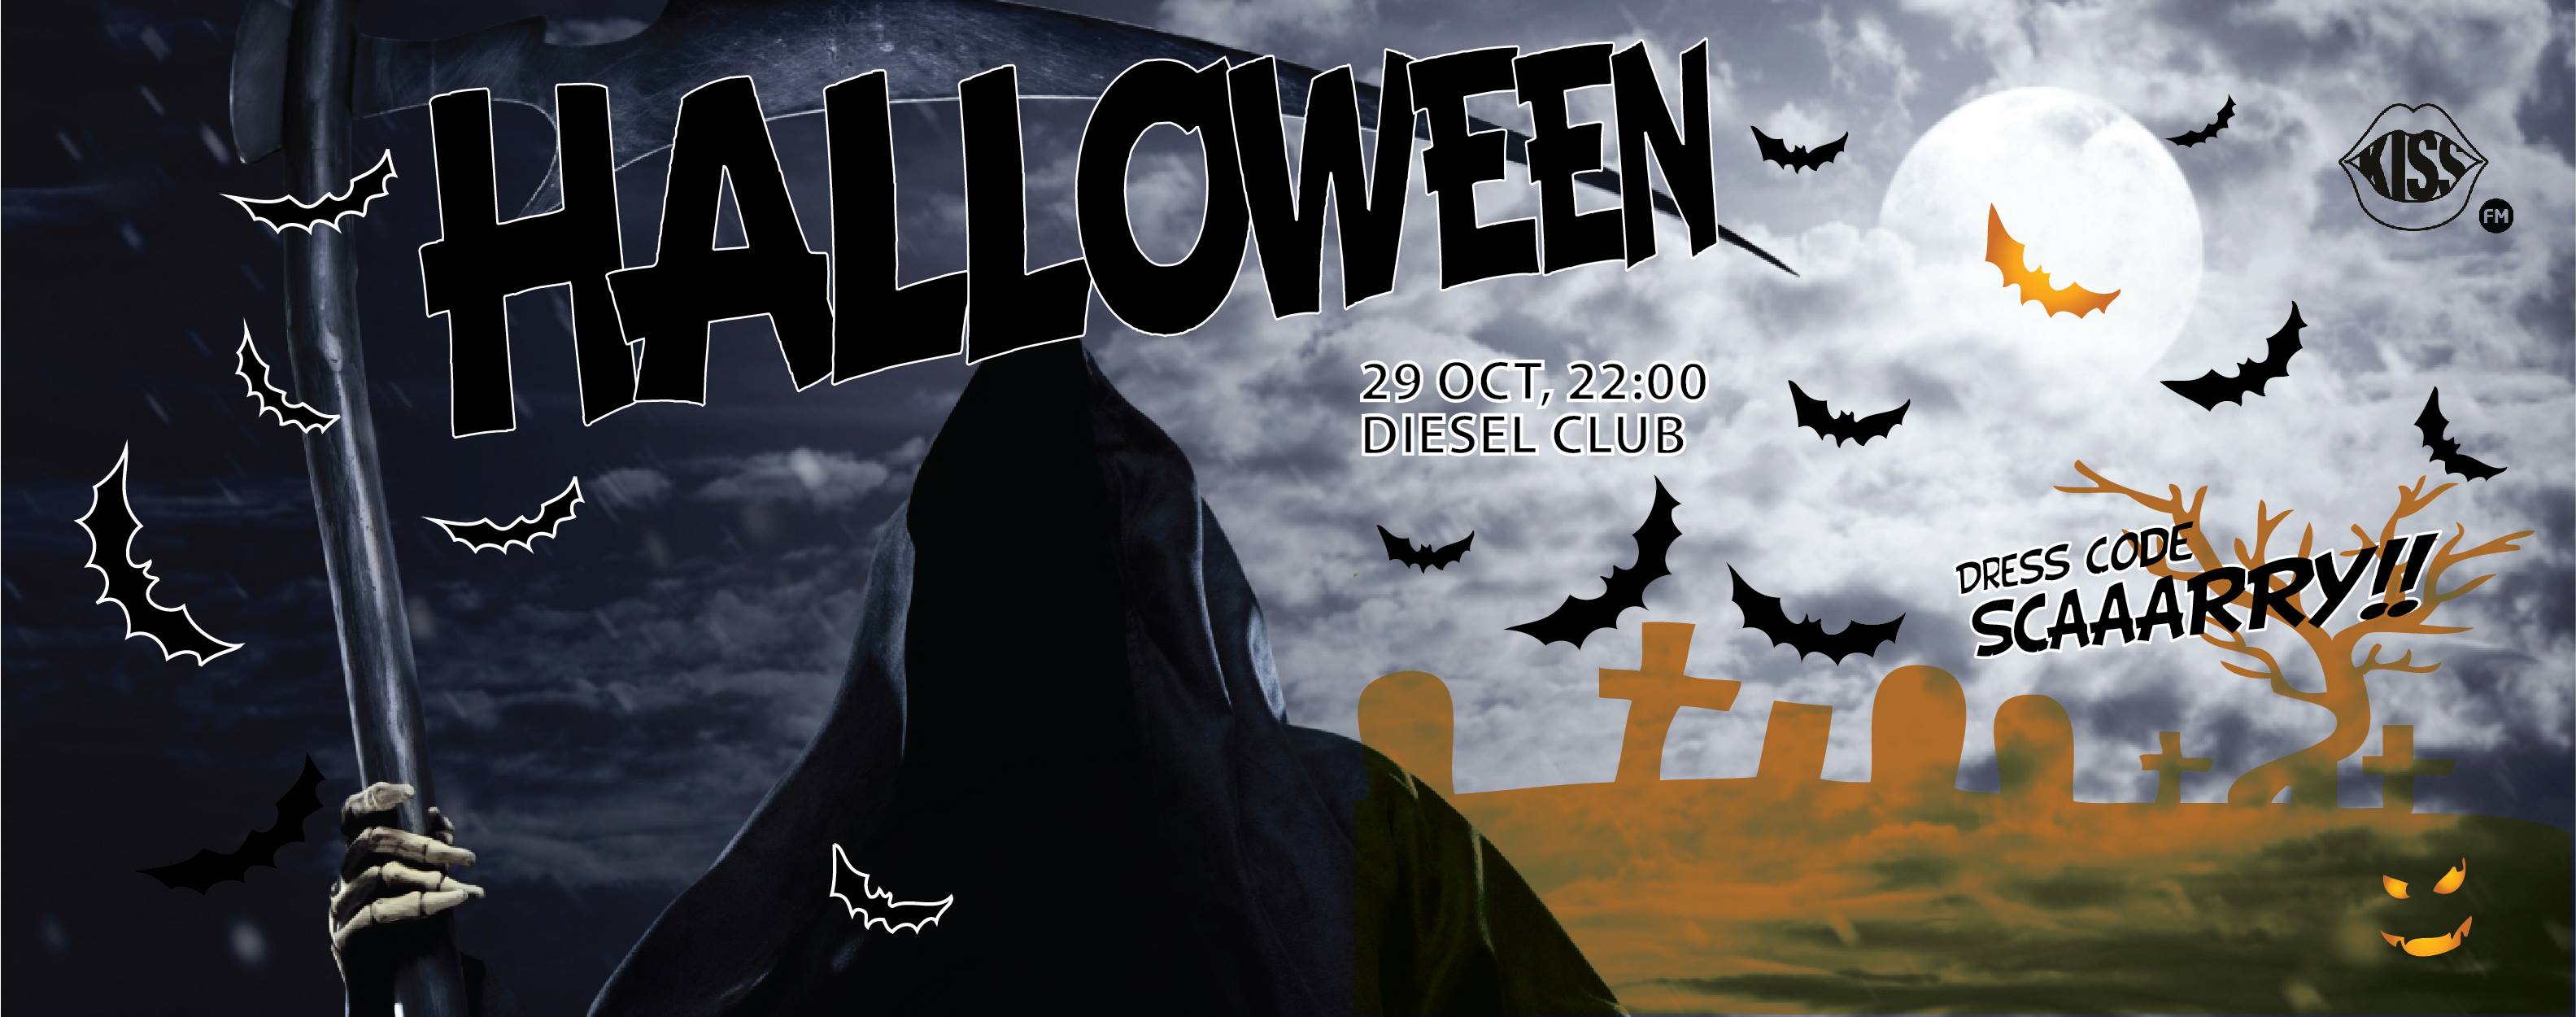 Halloween Party @ Diesel Club